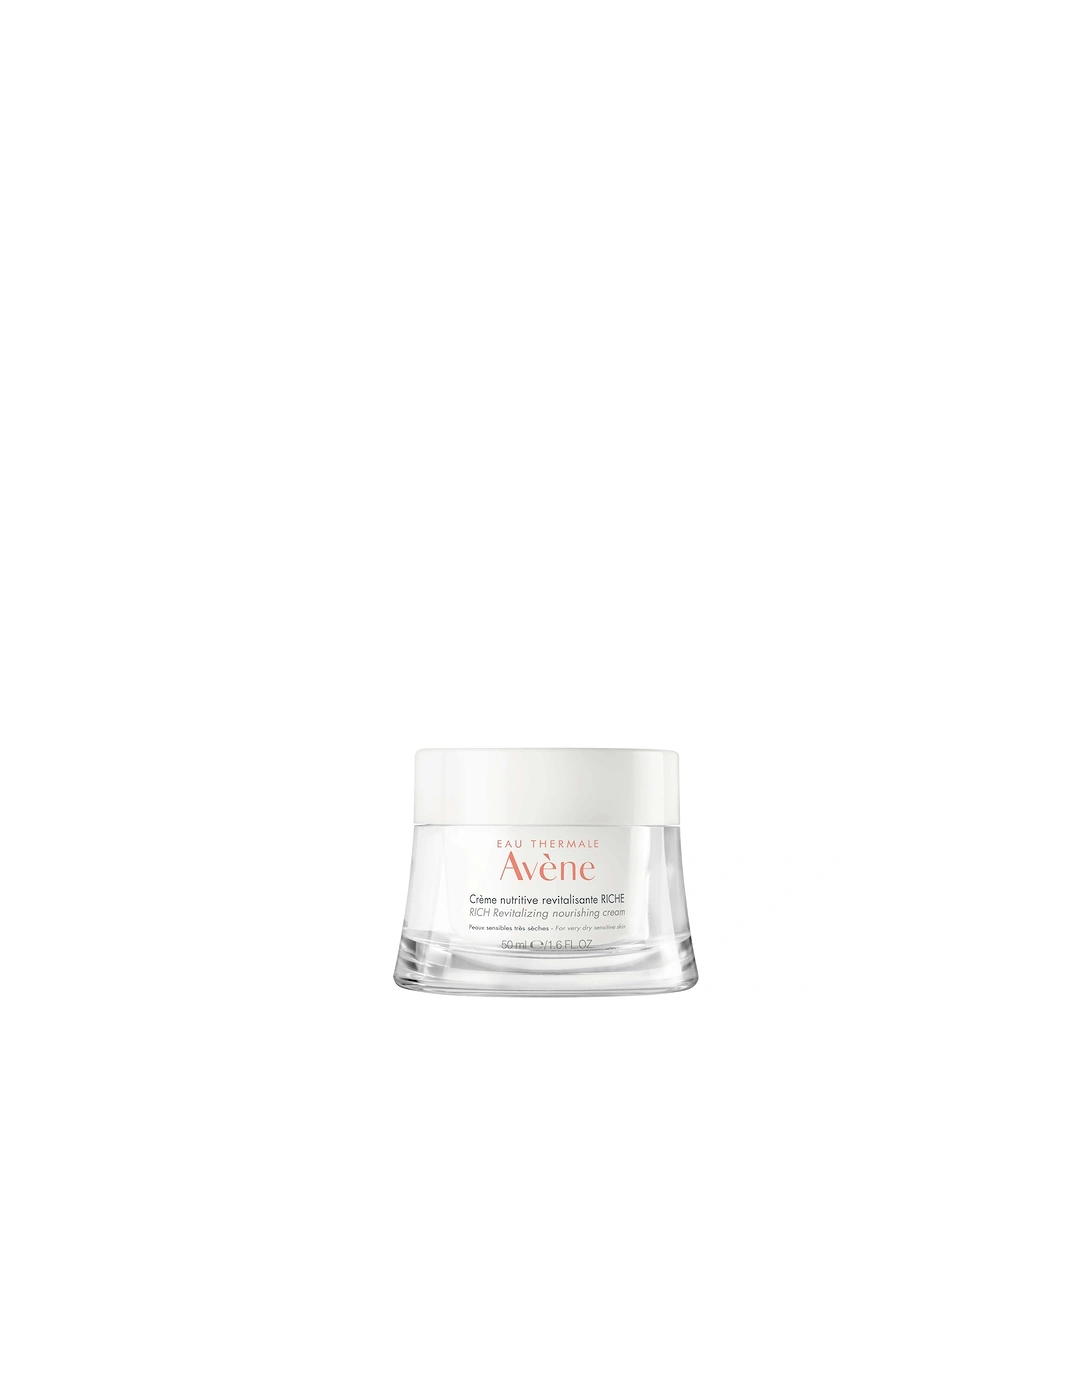 Avène Les Essentiels Rich Revitalizing Nourishing Cream Moisturiser for Dry, Sensitive Skin 50ml - Avene, 2 of 1